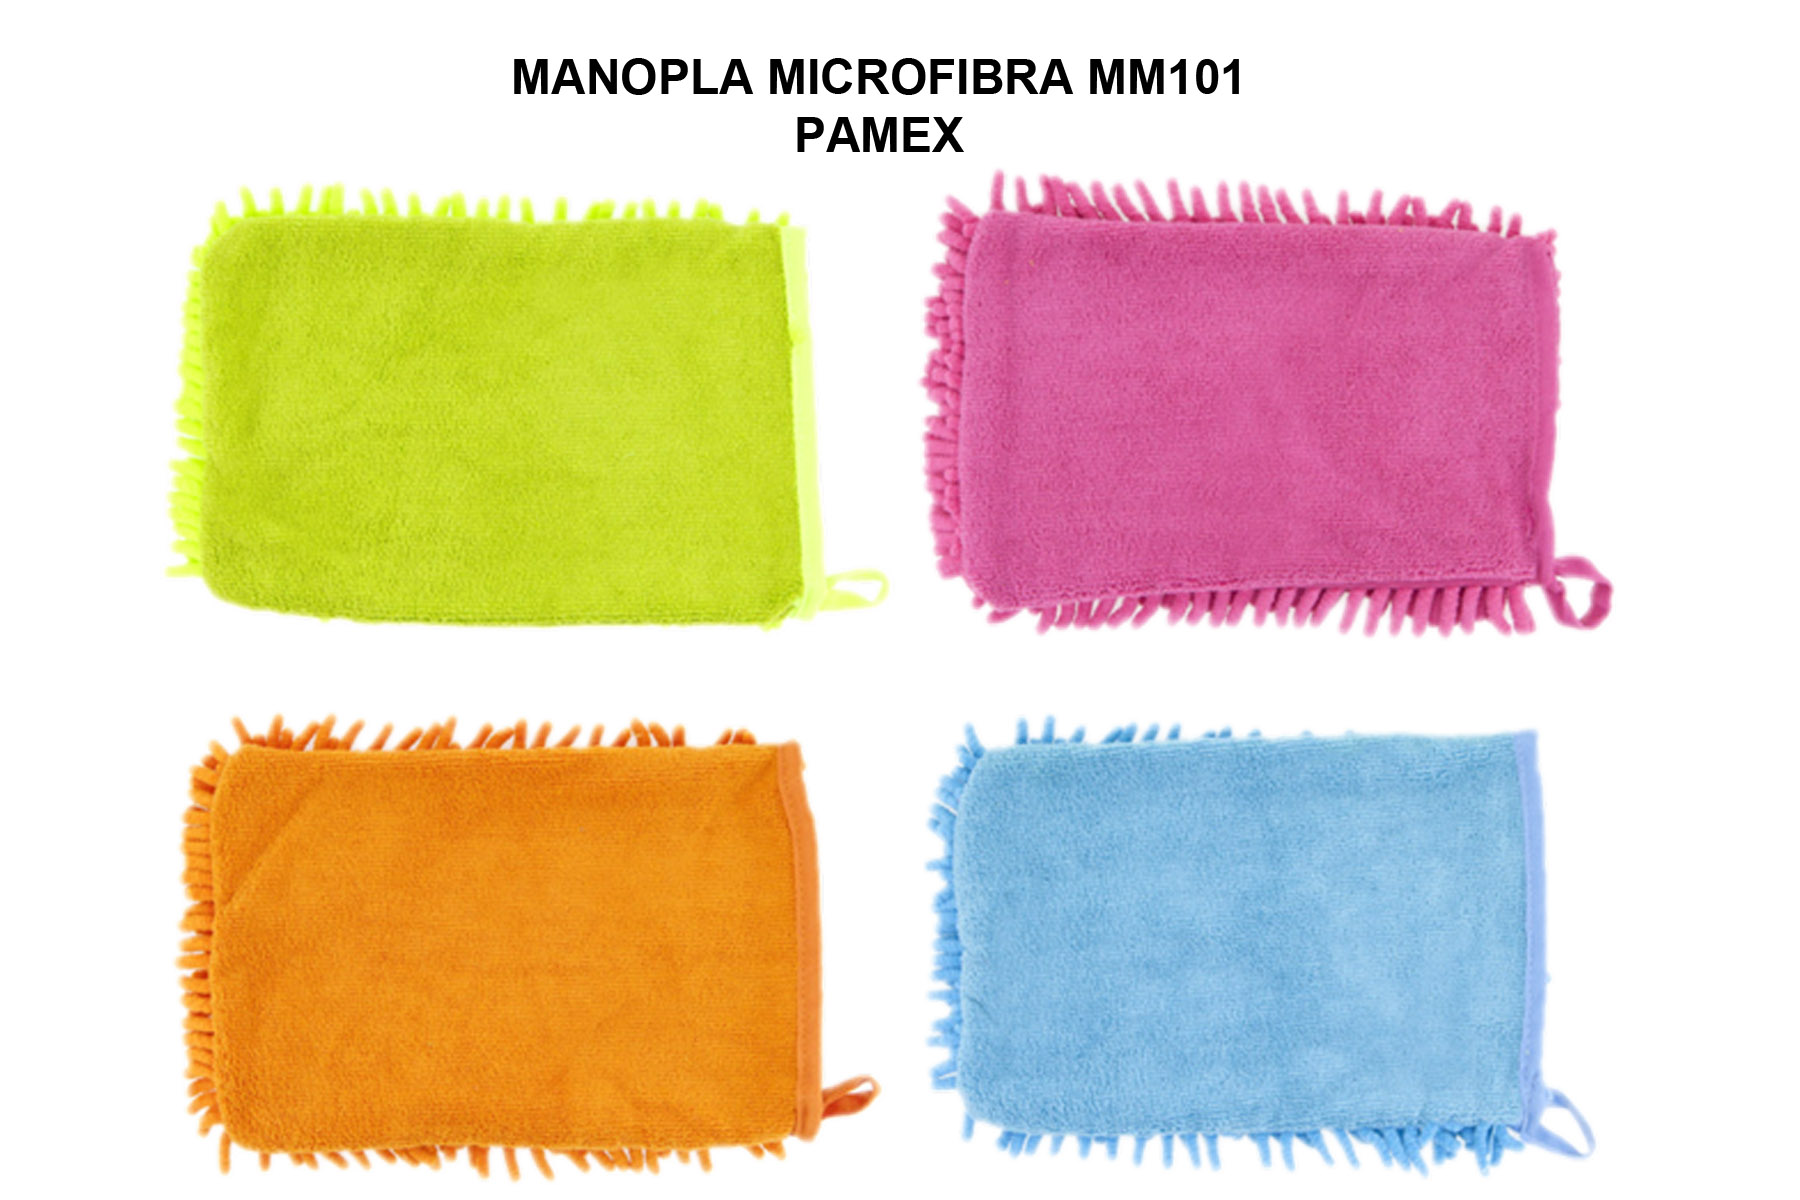 MANOPLA MICROFIBRA MM101 PAMEX